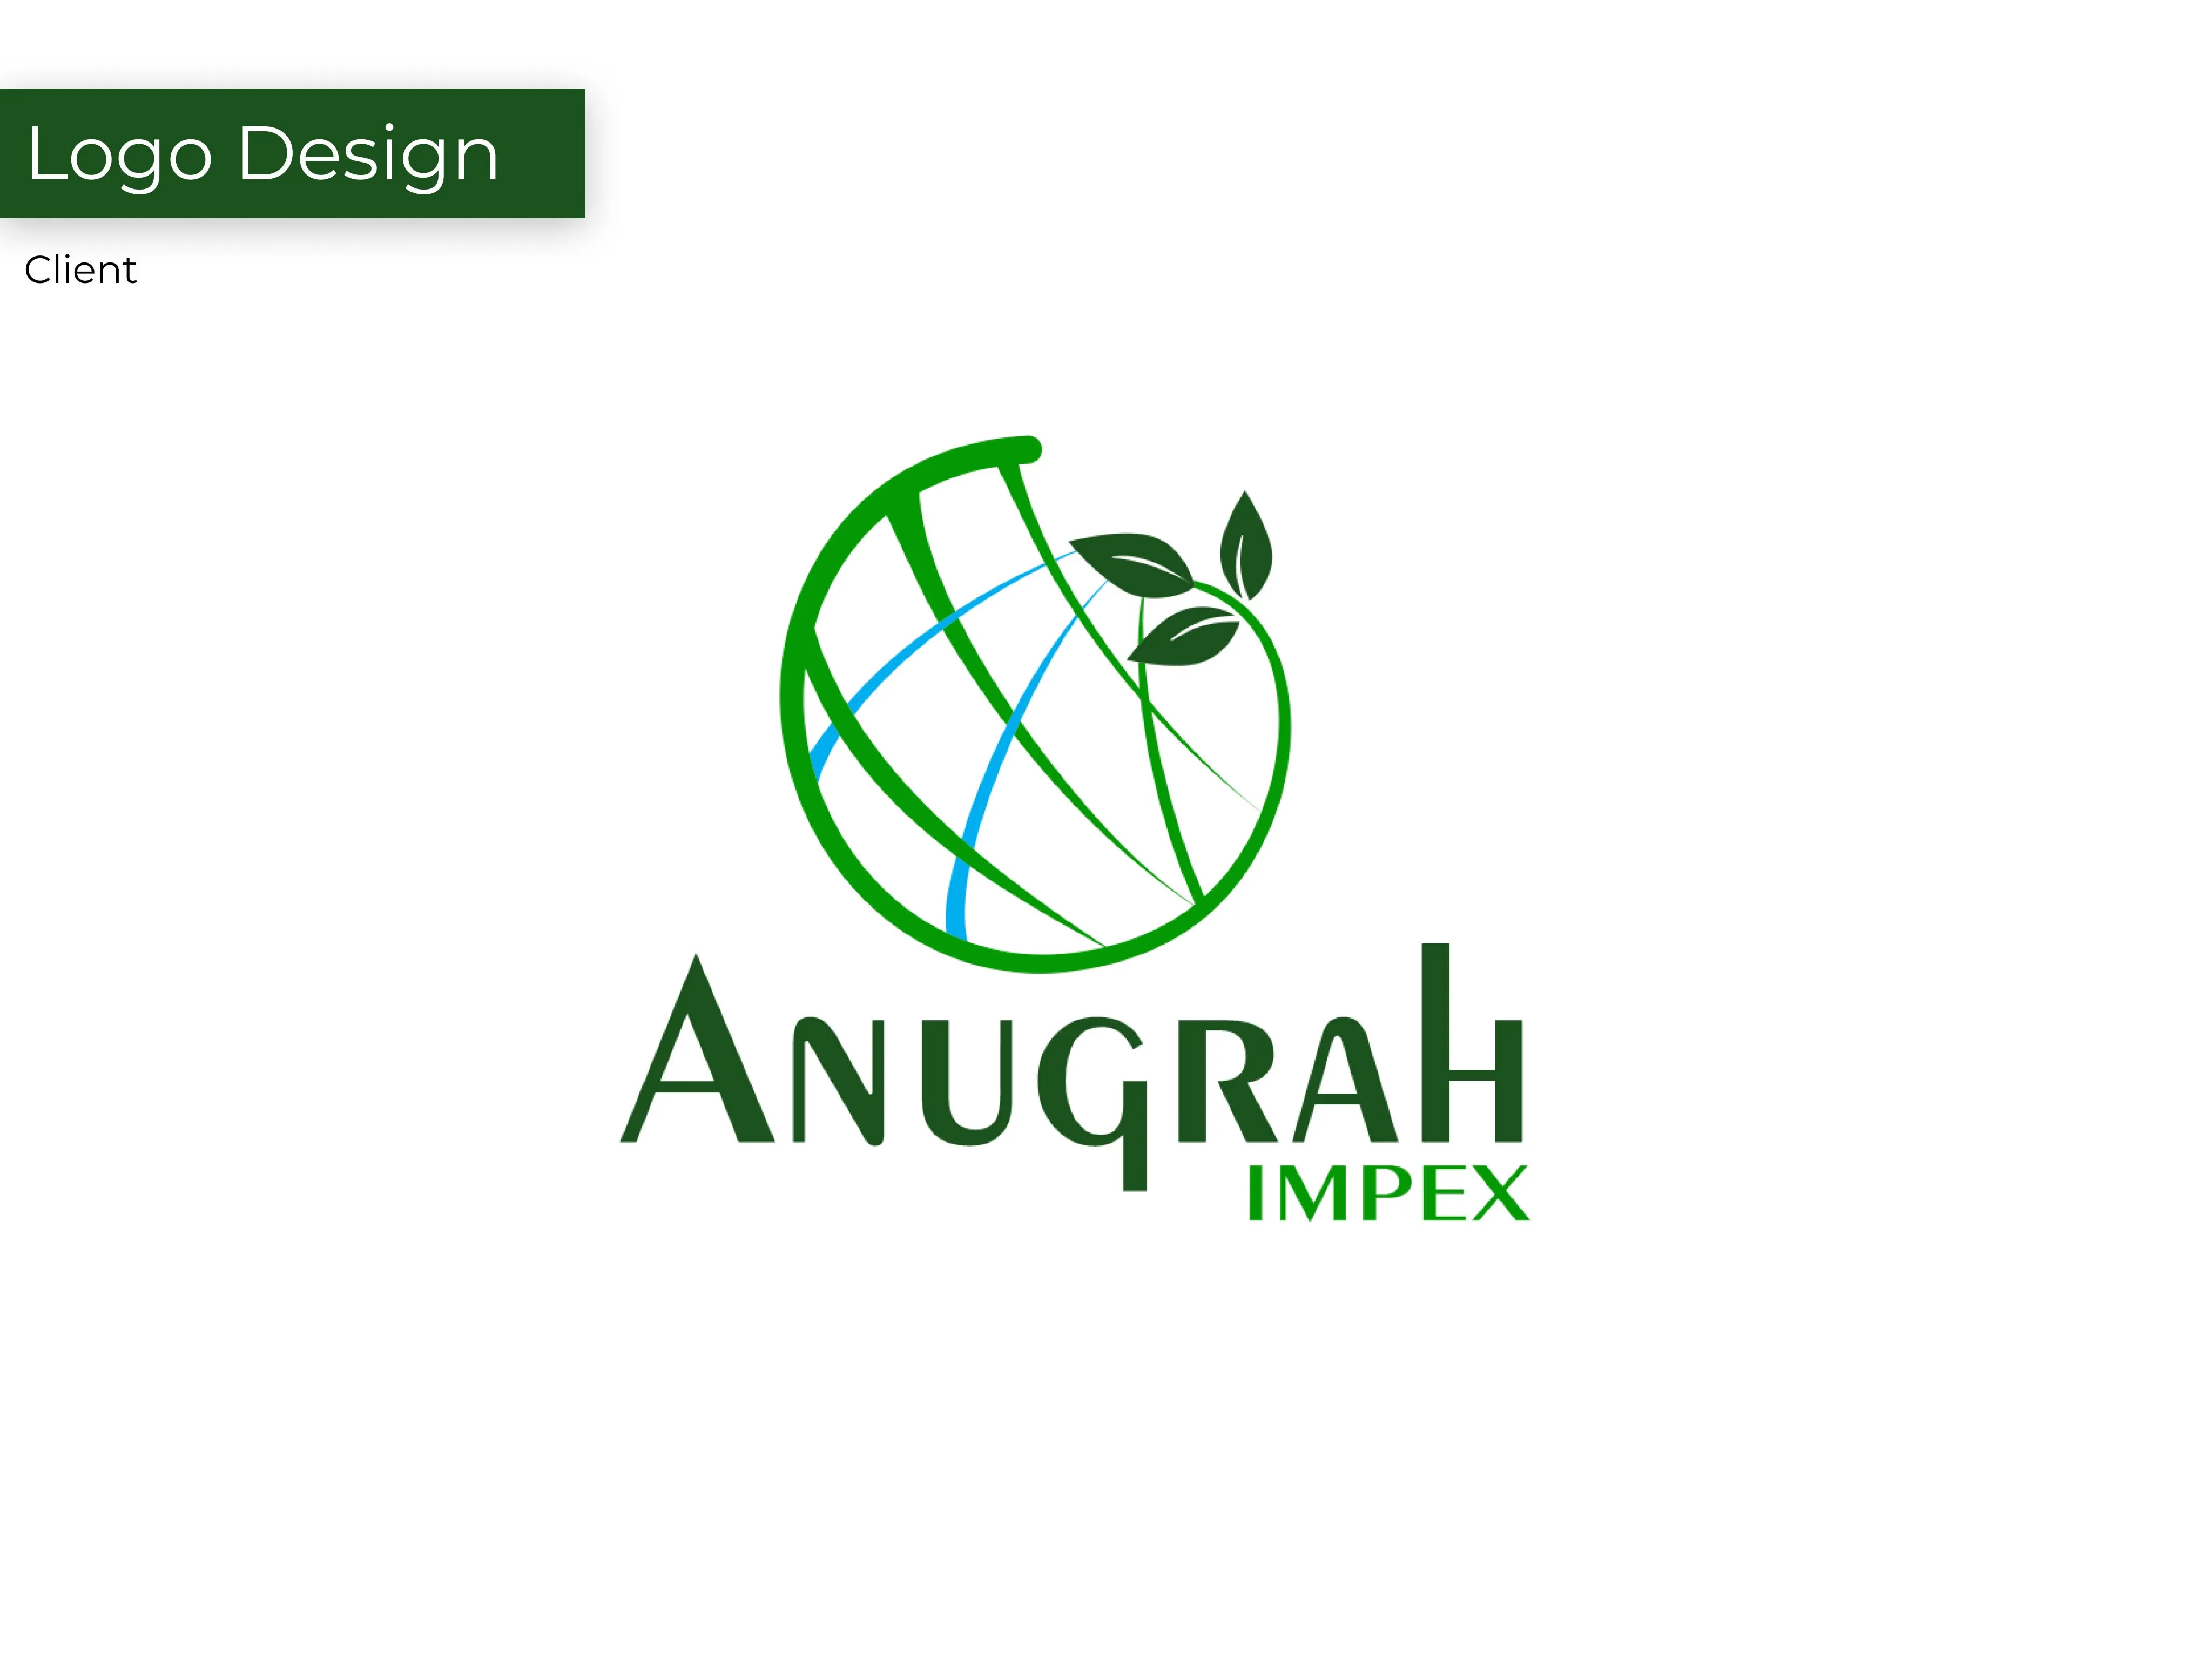 Anugrah IMAGE